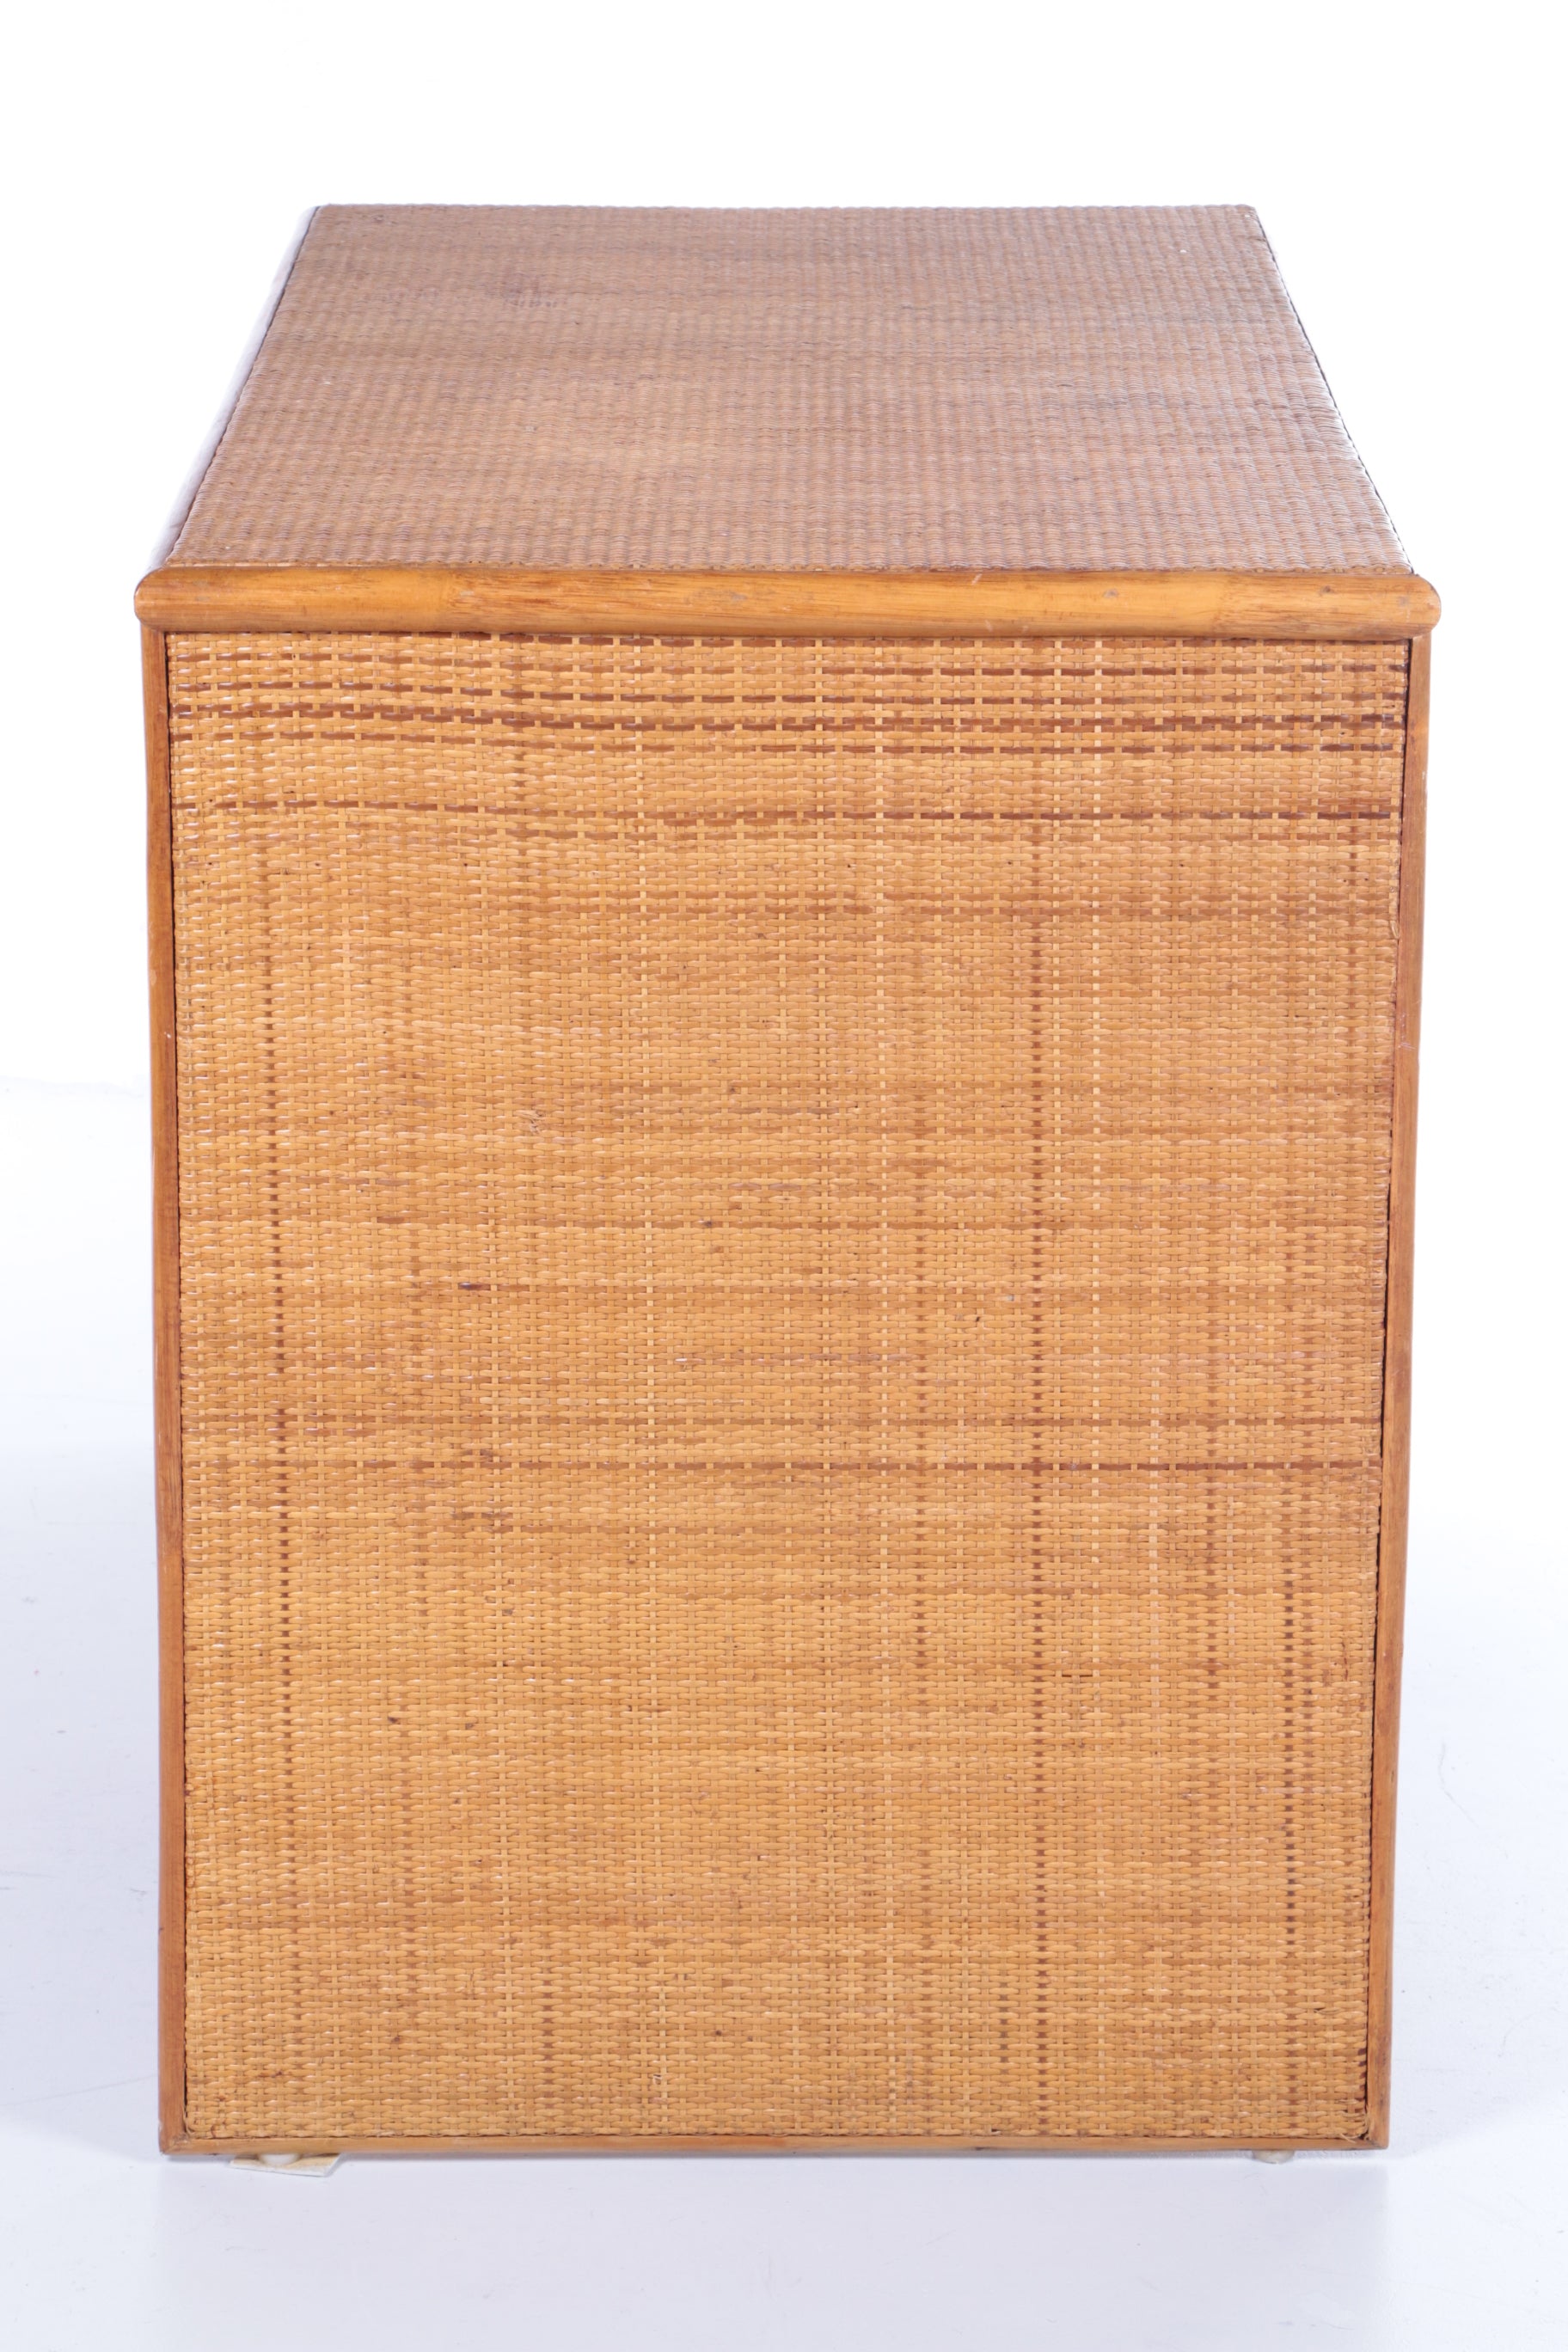 Bohemian stijl Bamboe Rotan bureau met lades uit Frankrijk jaren60zijkant